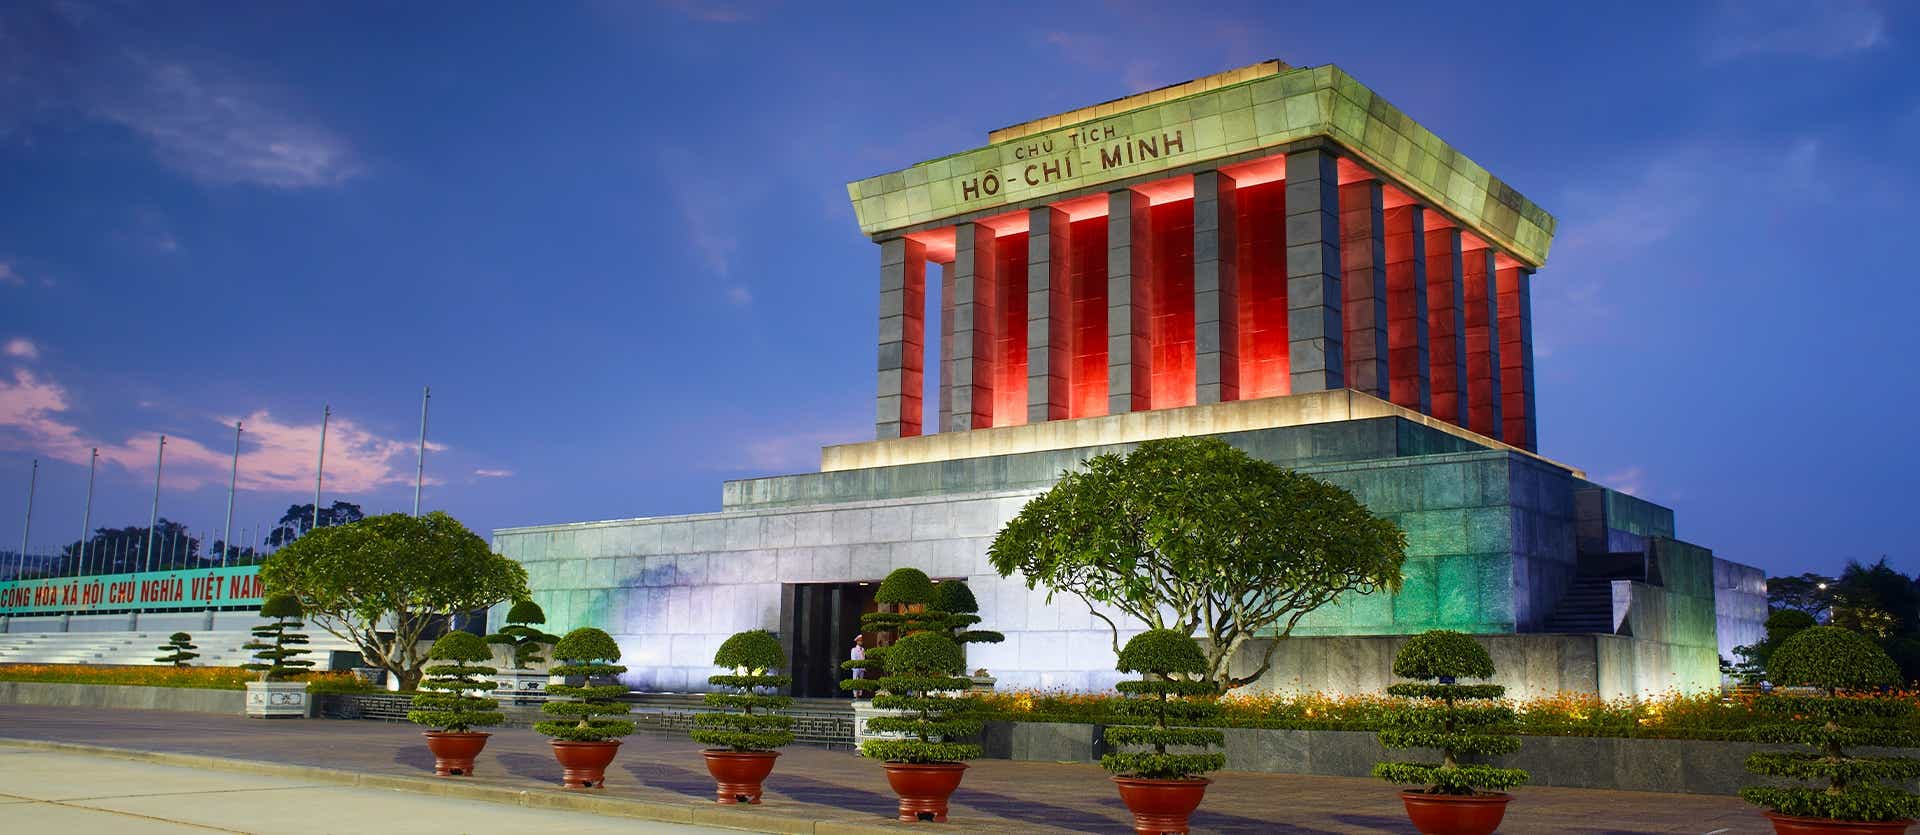 Ho Chi Minh Mausoleum  <span class="iconos separador"></span> Hanoi